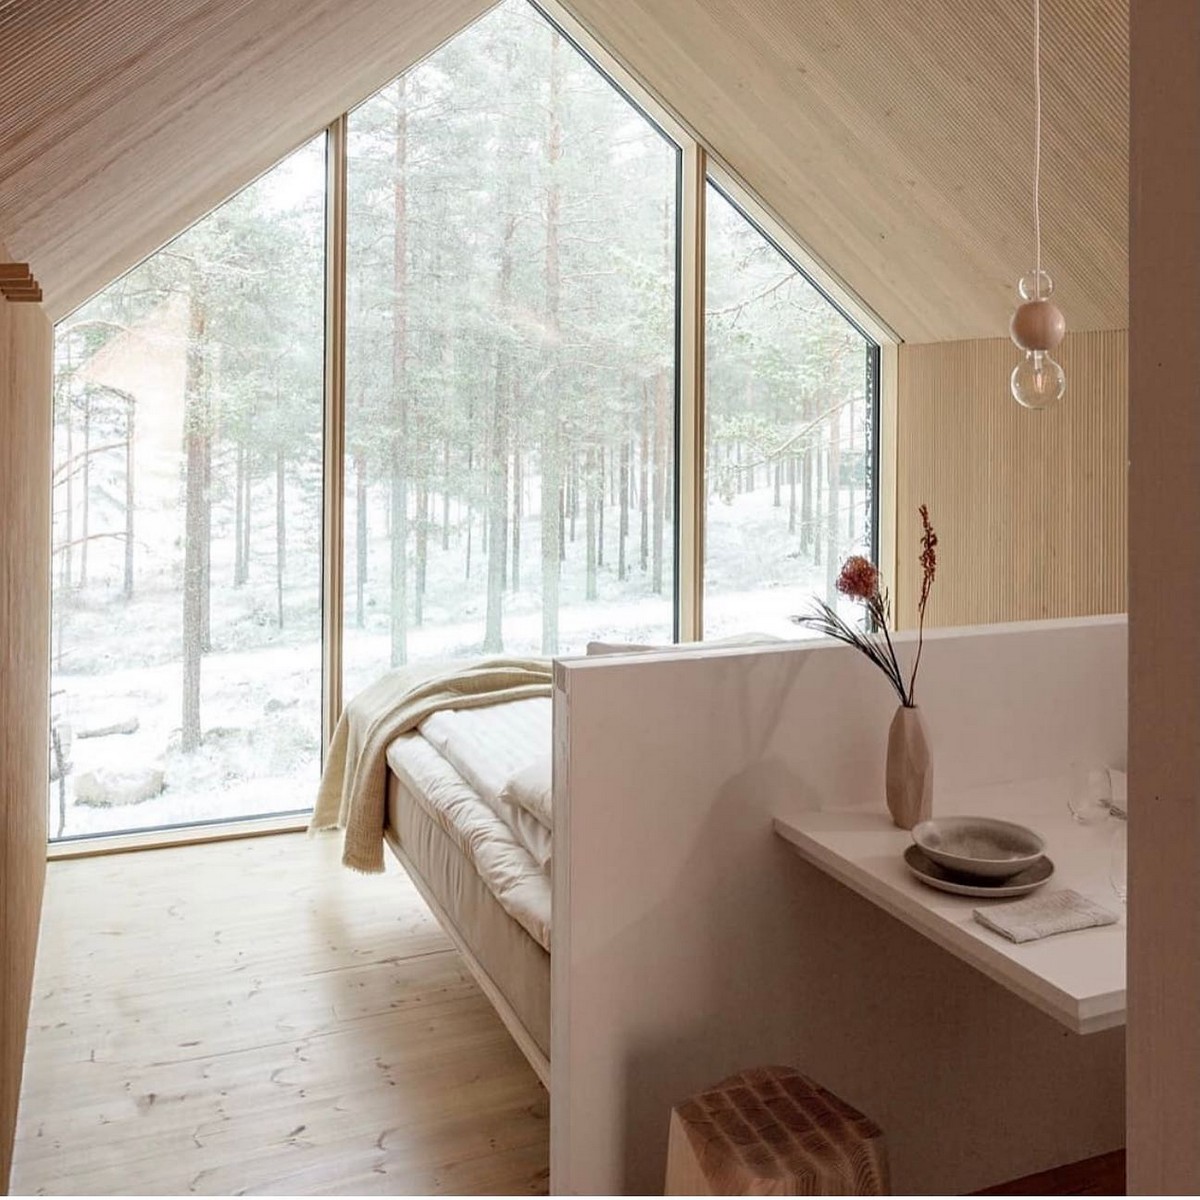 Чёрный домик для отдыха в лесу Финляндии